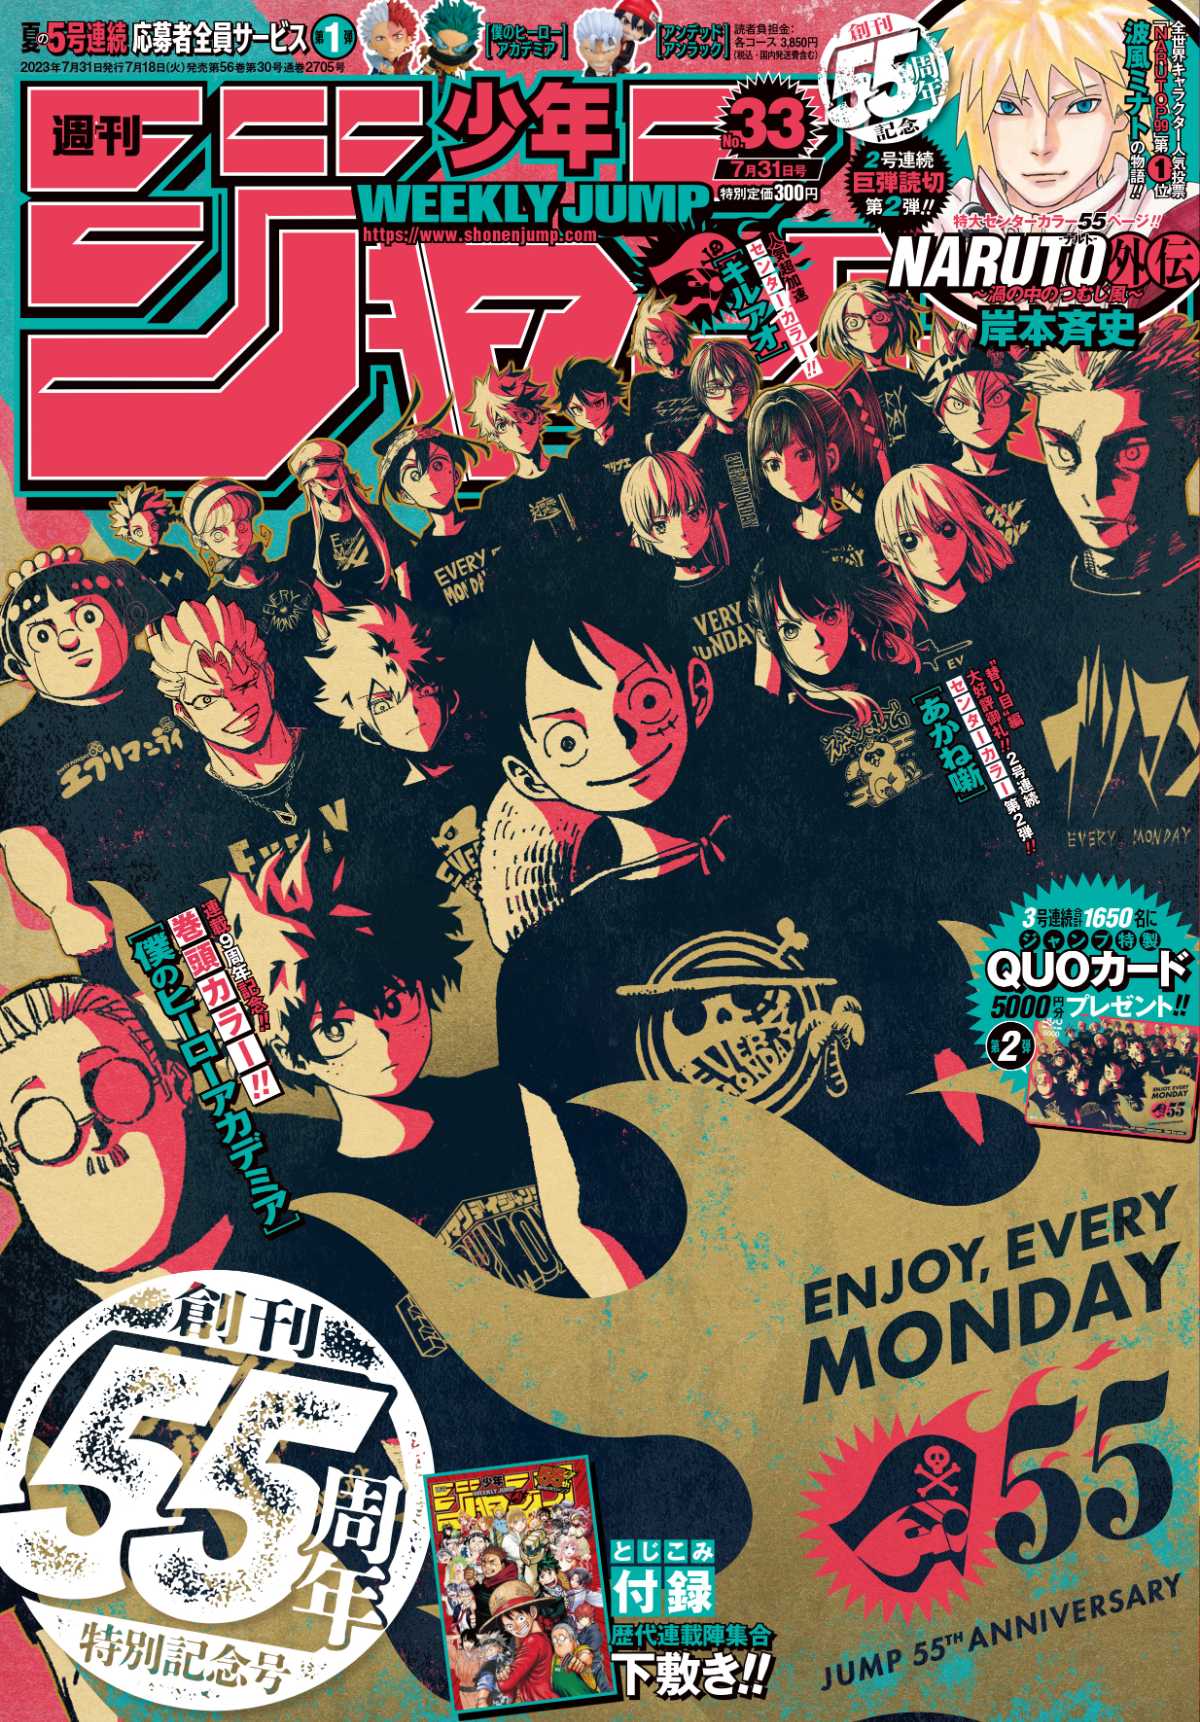 8月11日発売 週刊少年ジャンプ x ビームス